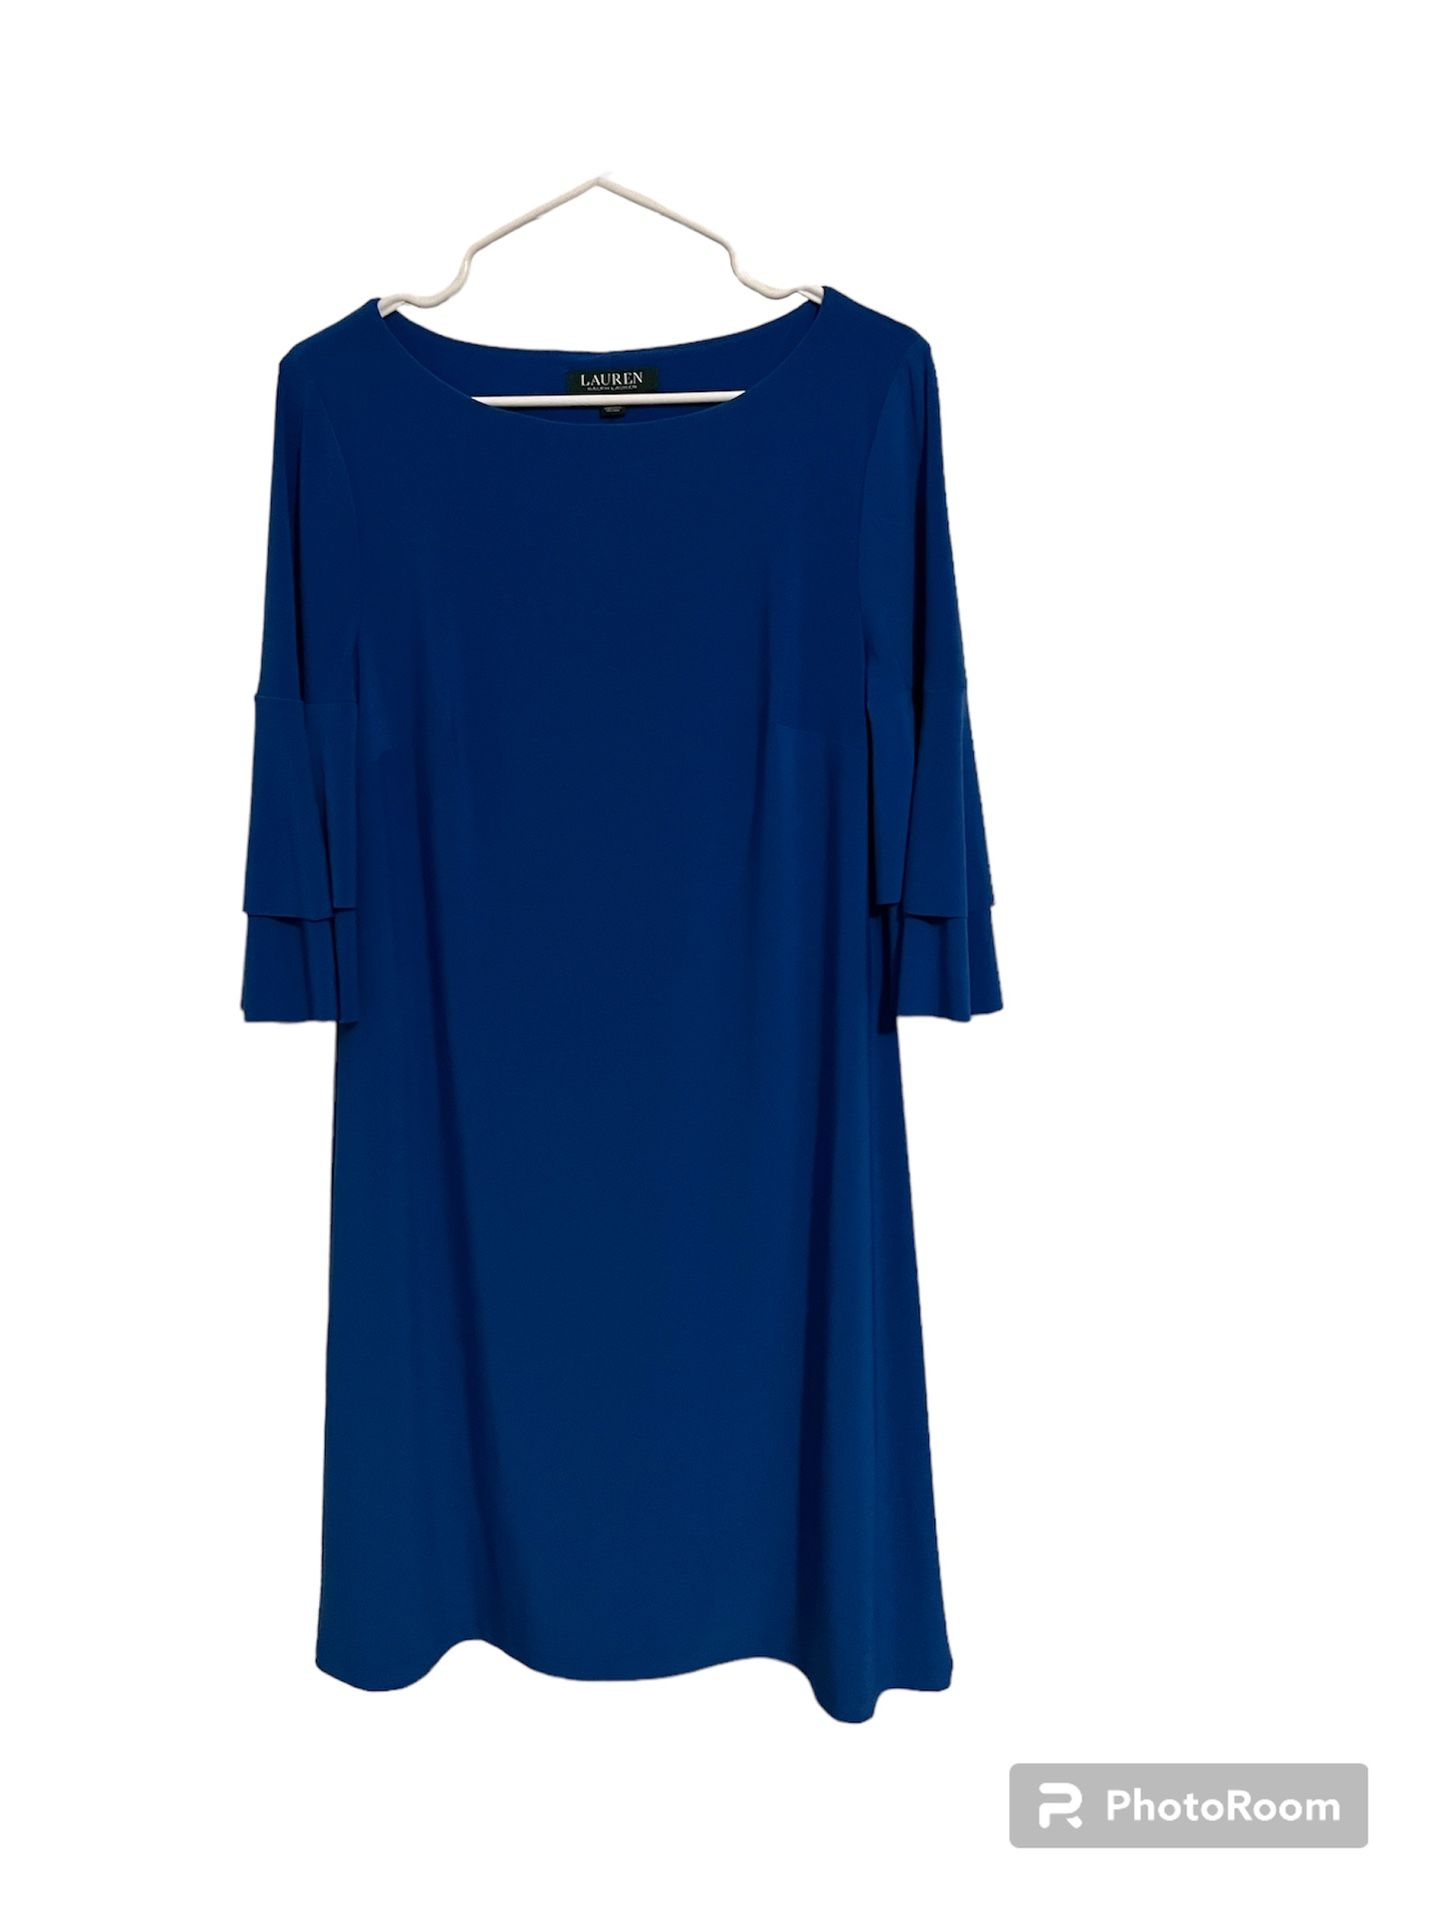 Ralph Lauren dress royal blue business wear, women’s 10